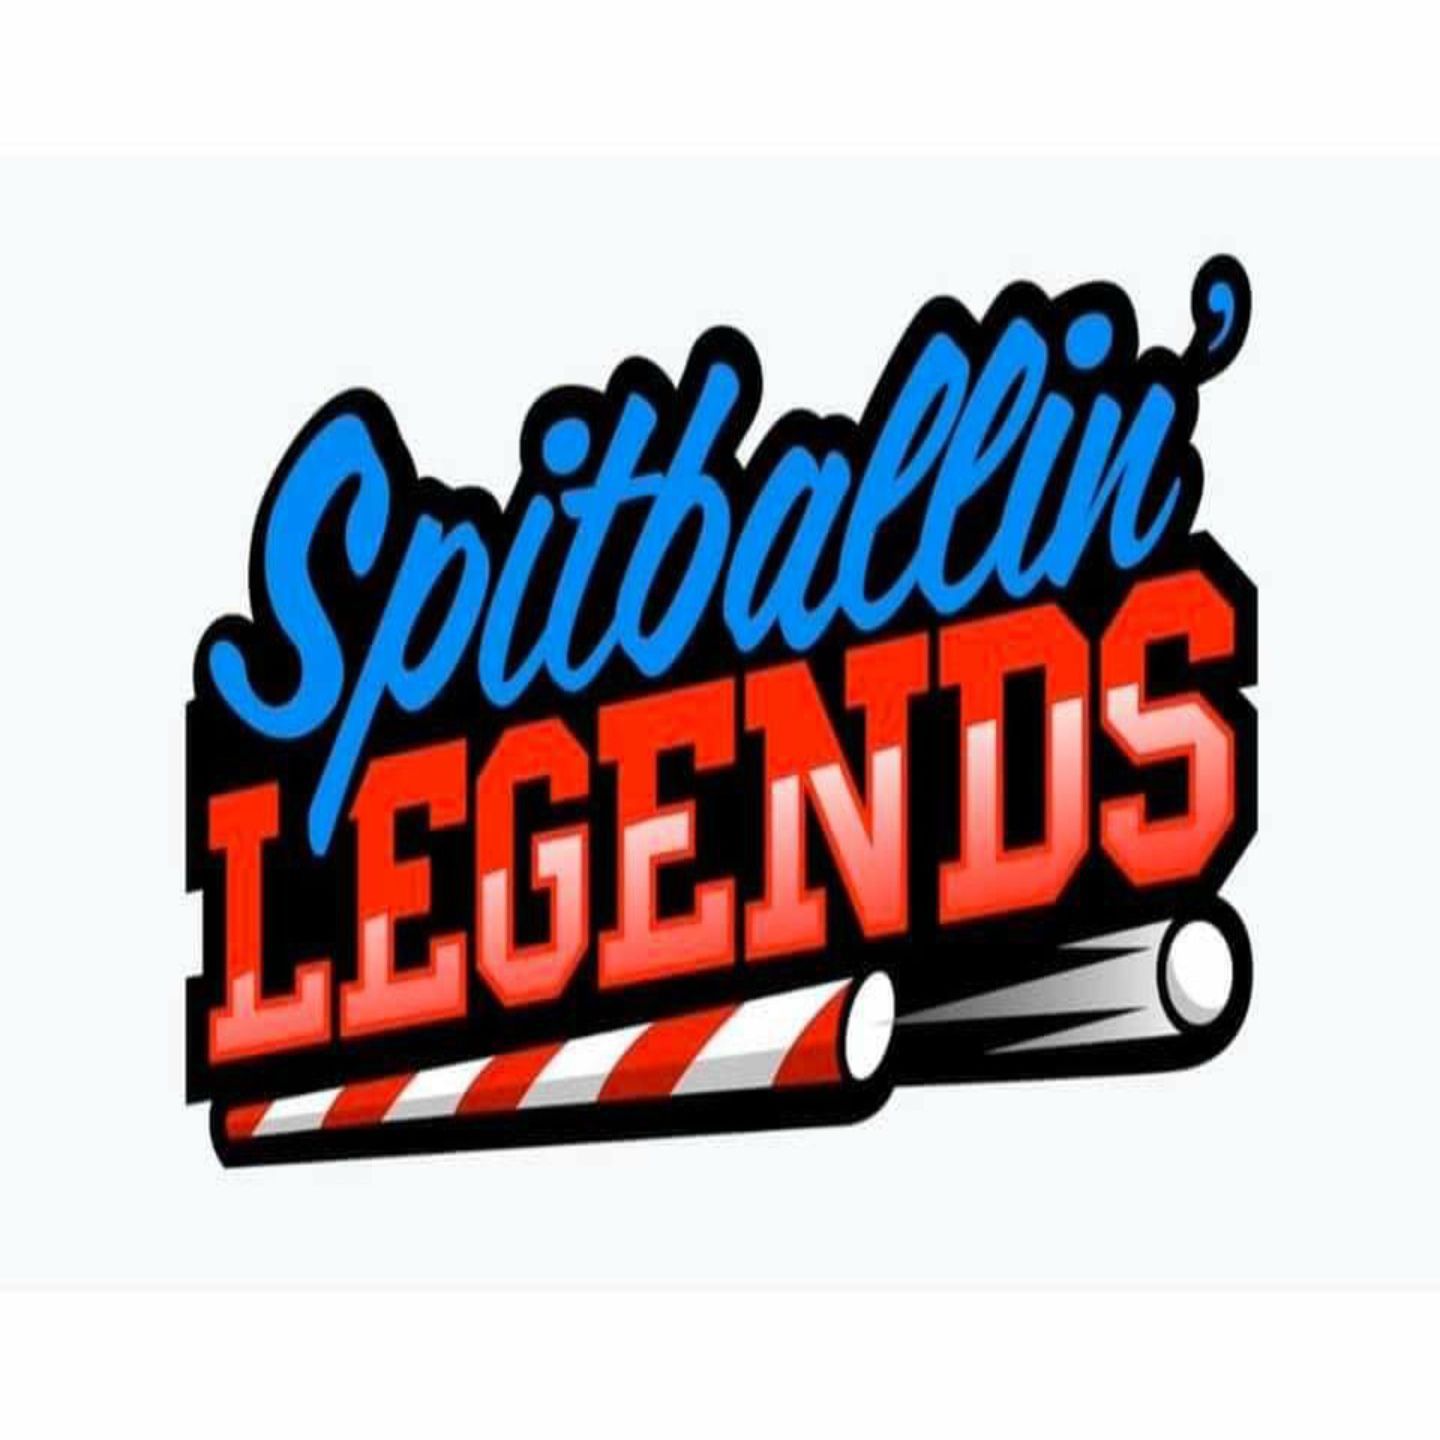 Spitballin' Legends